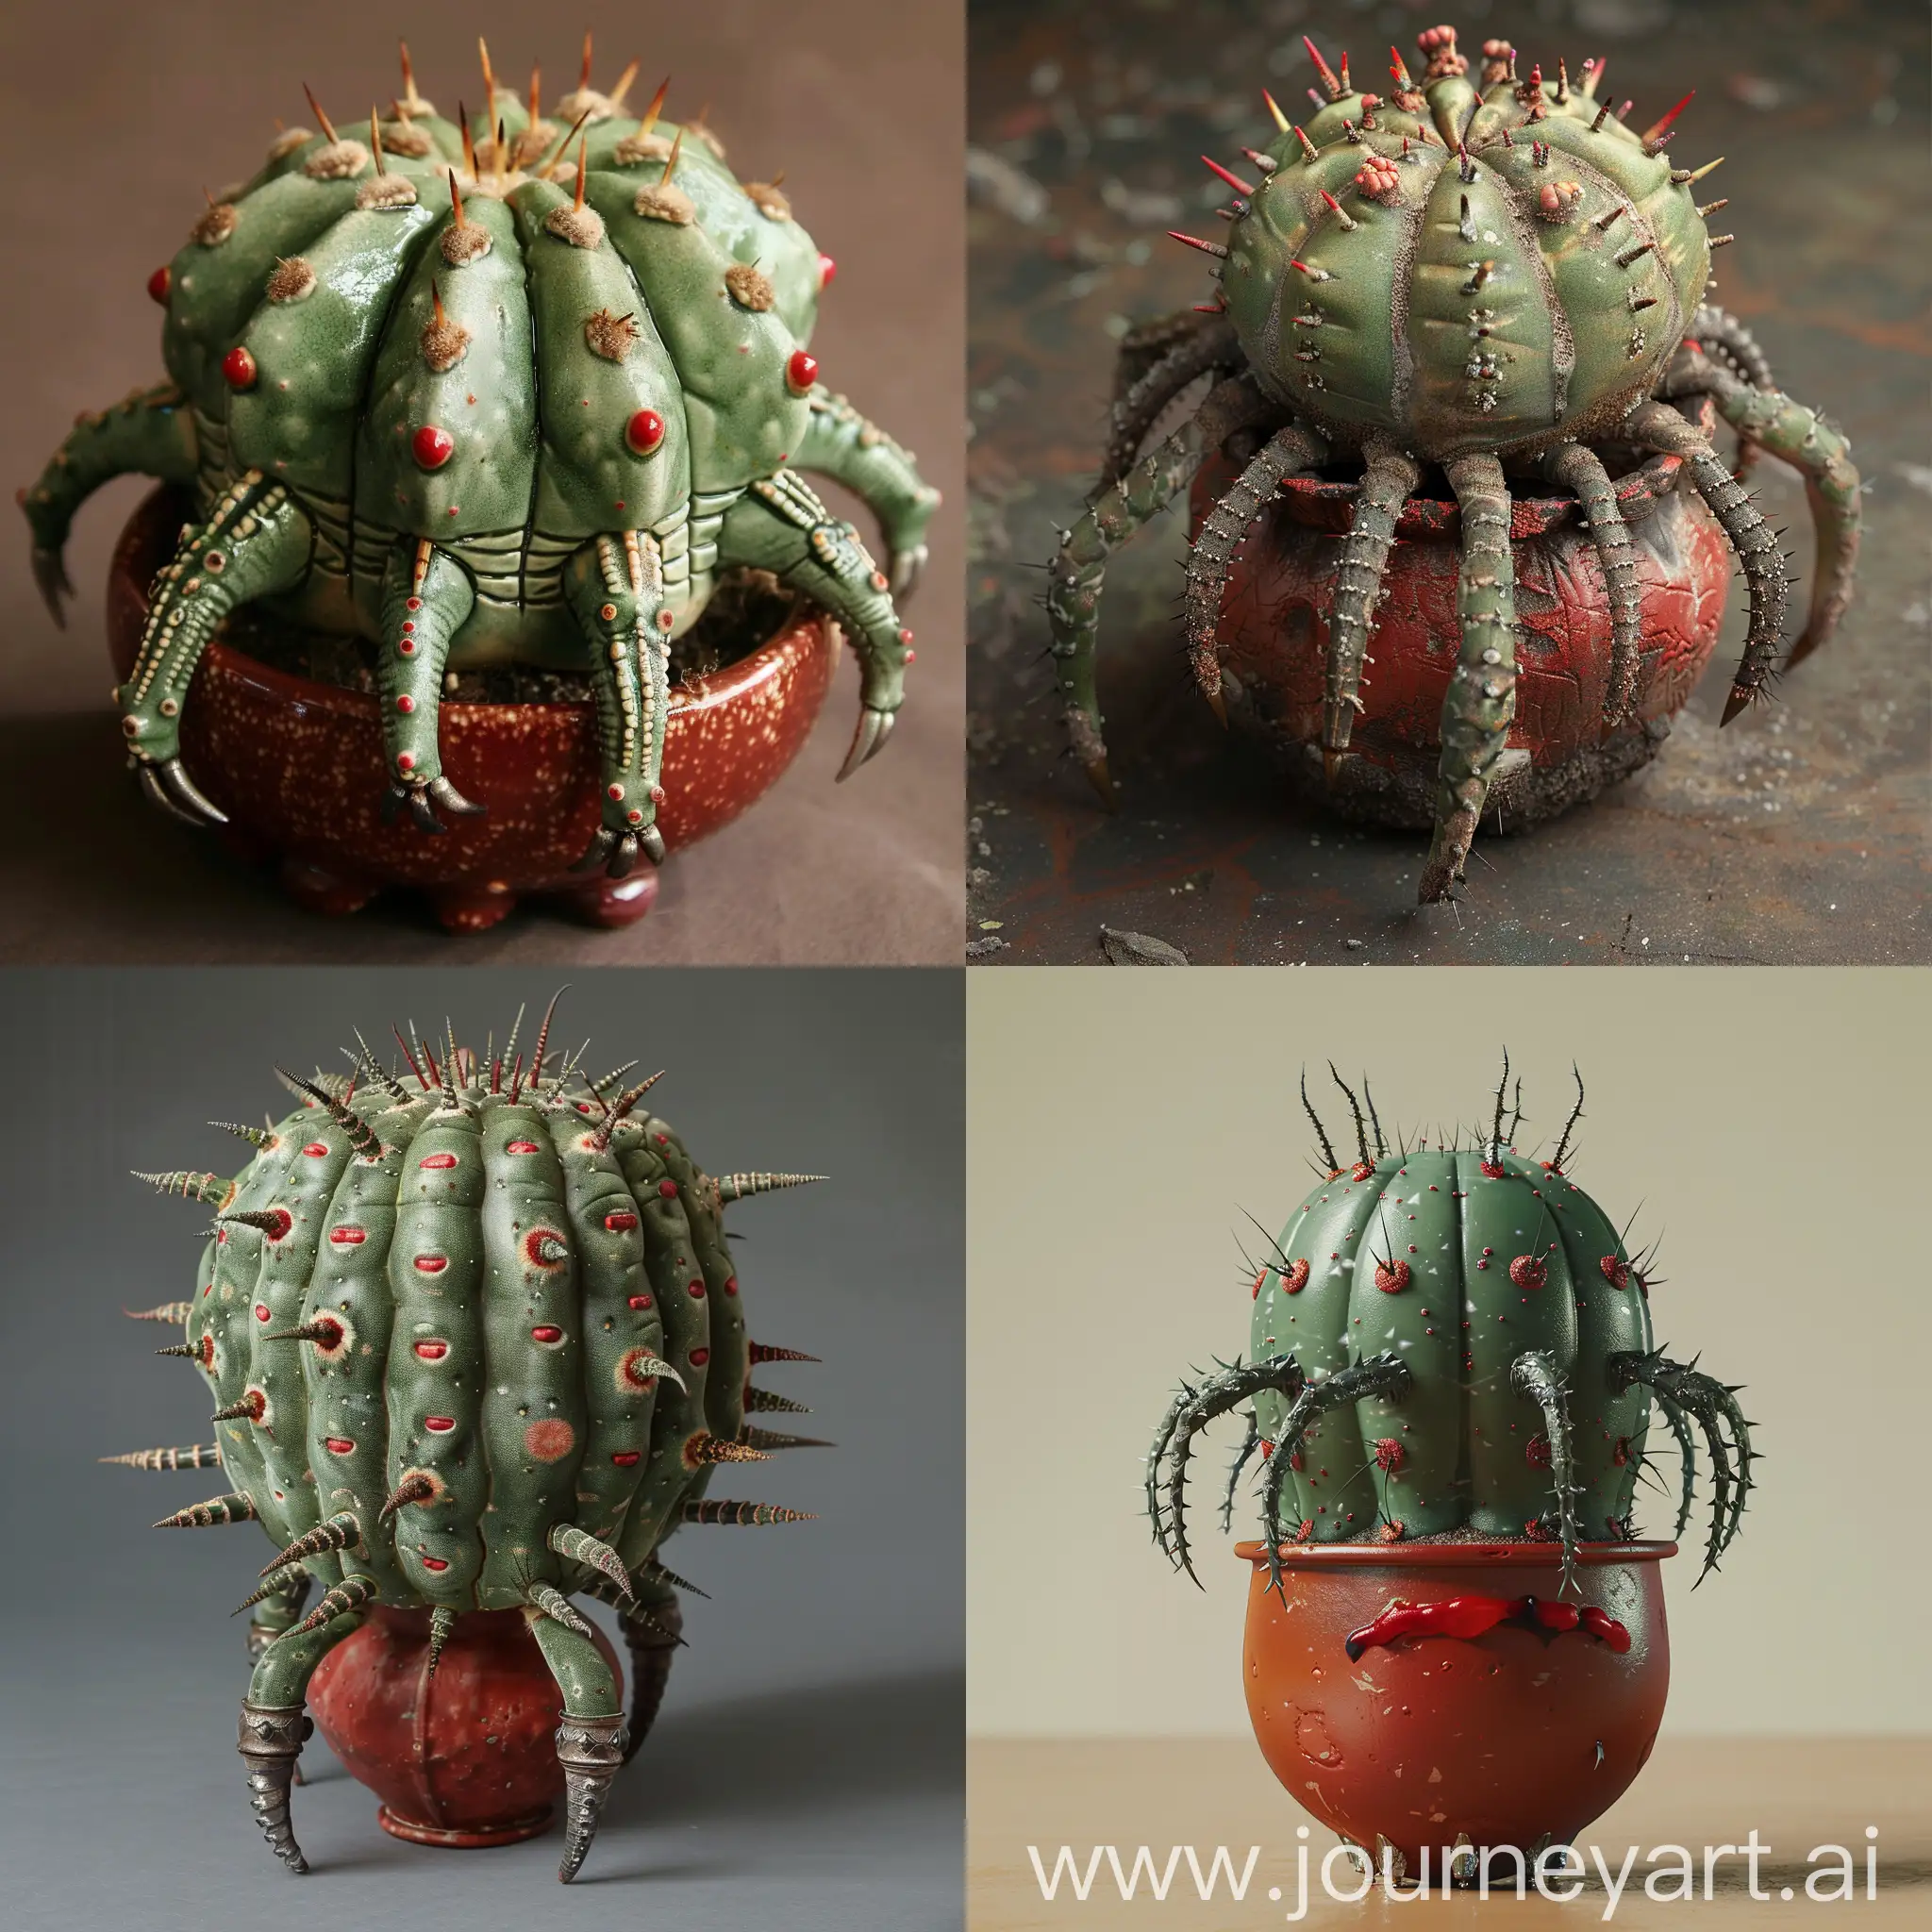 Unique-PistachioColored-Aloe-Vera-Cactus-in-Red-Pot-with-SpiderLike-CarbonTitanium-Ring